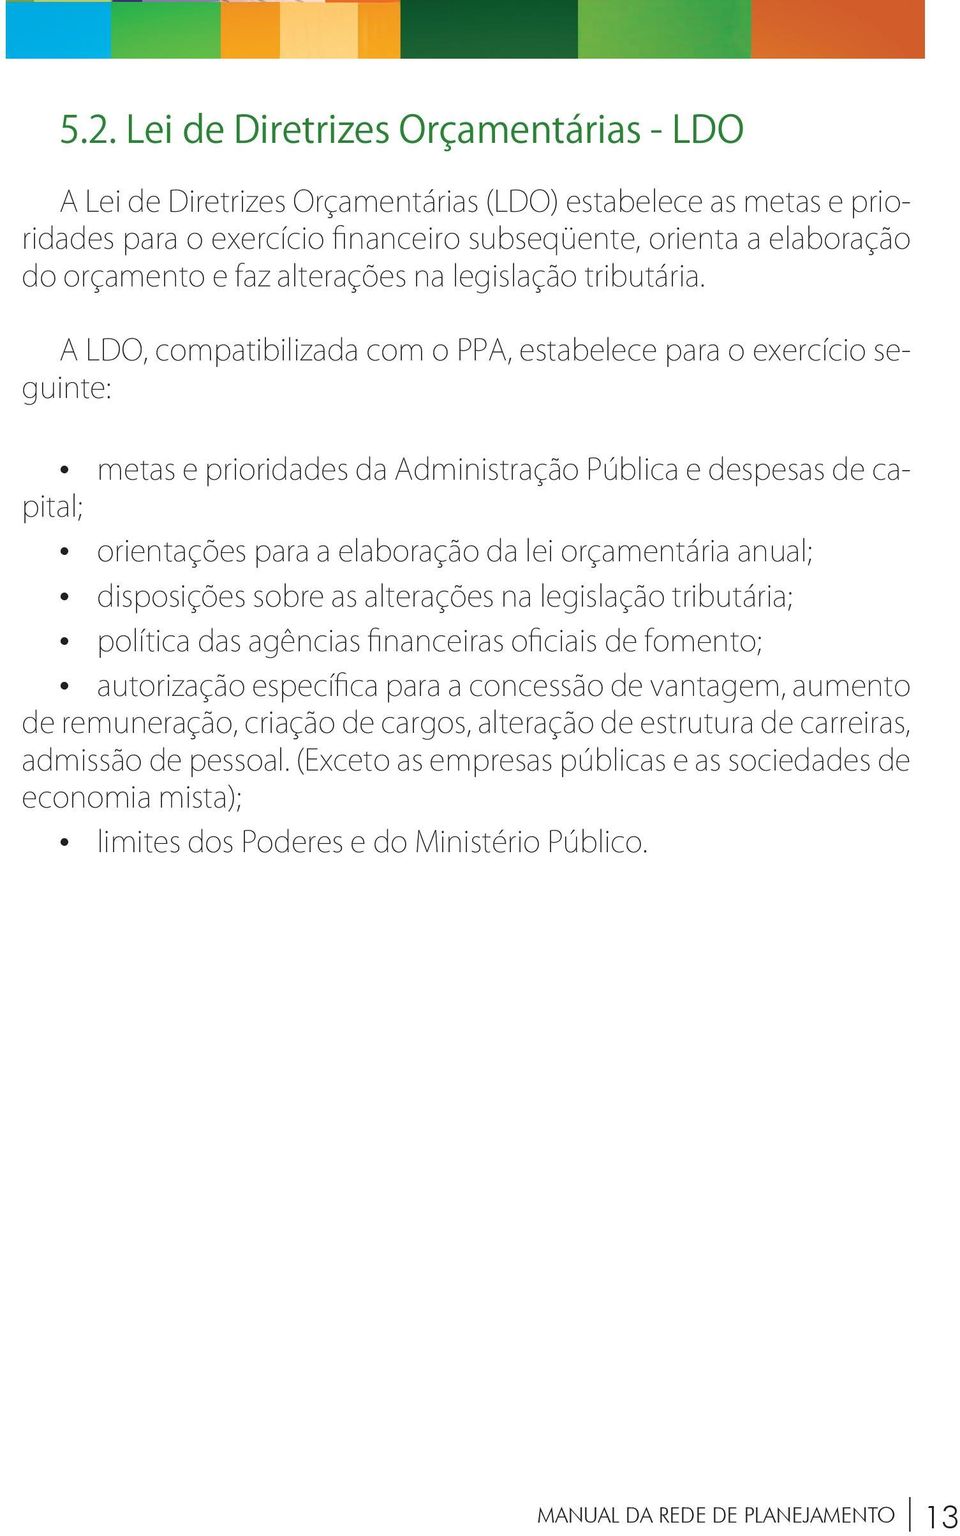 A LDO, compatibilizada com o PPA, estabelece para o exercício seguinte: metas e prioridades da Administração Pública e despesas de capital; orientações para a elaboração da lei orçamentária anual;